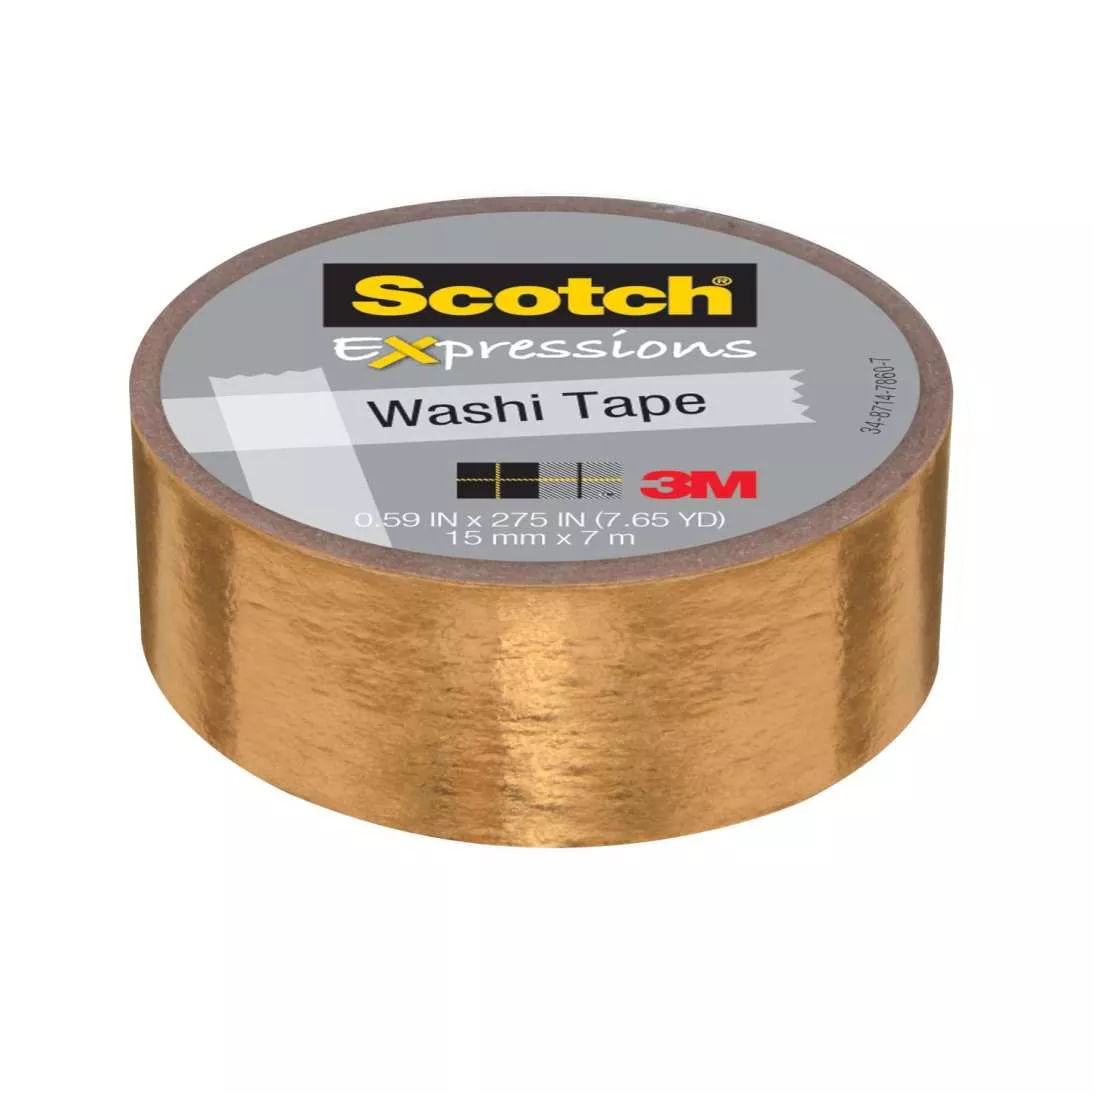 Scotch® Expressions Washi Tape C614-GLD, .59 in x 275 in (15 mm x 7 m)
Gold Foil